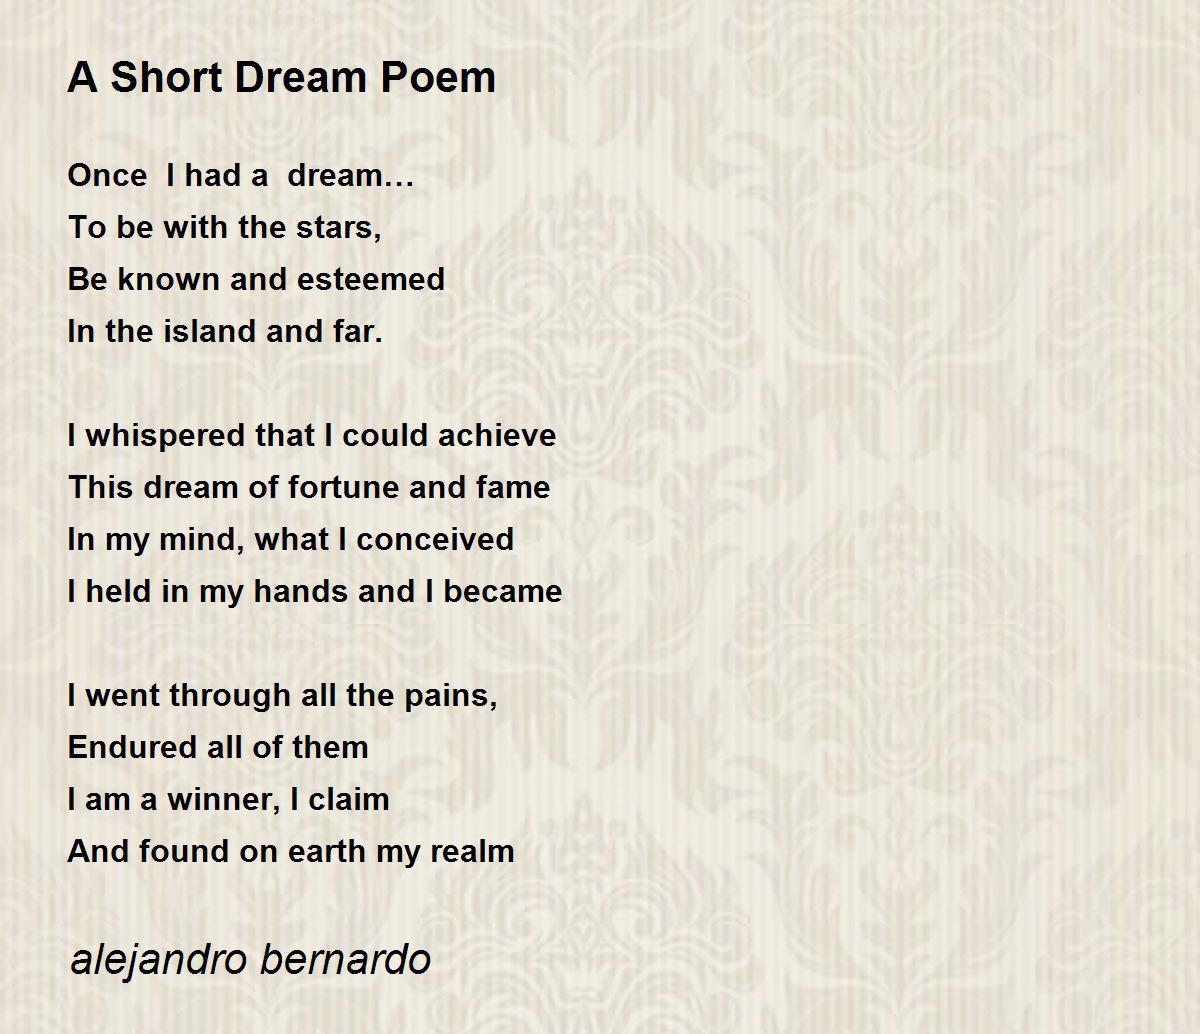 A Short Dream Poem - A Short Dream Poem Poem by alejandro bernardo